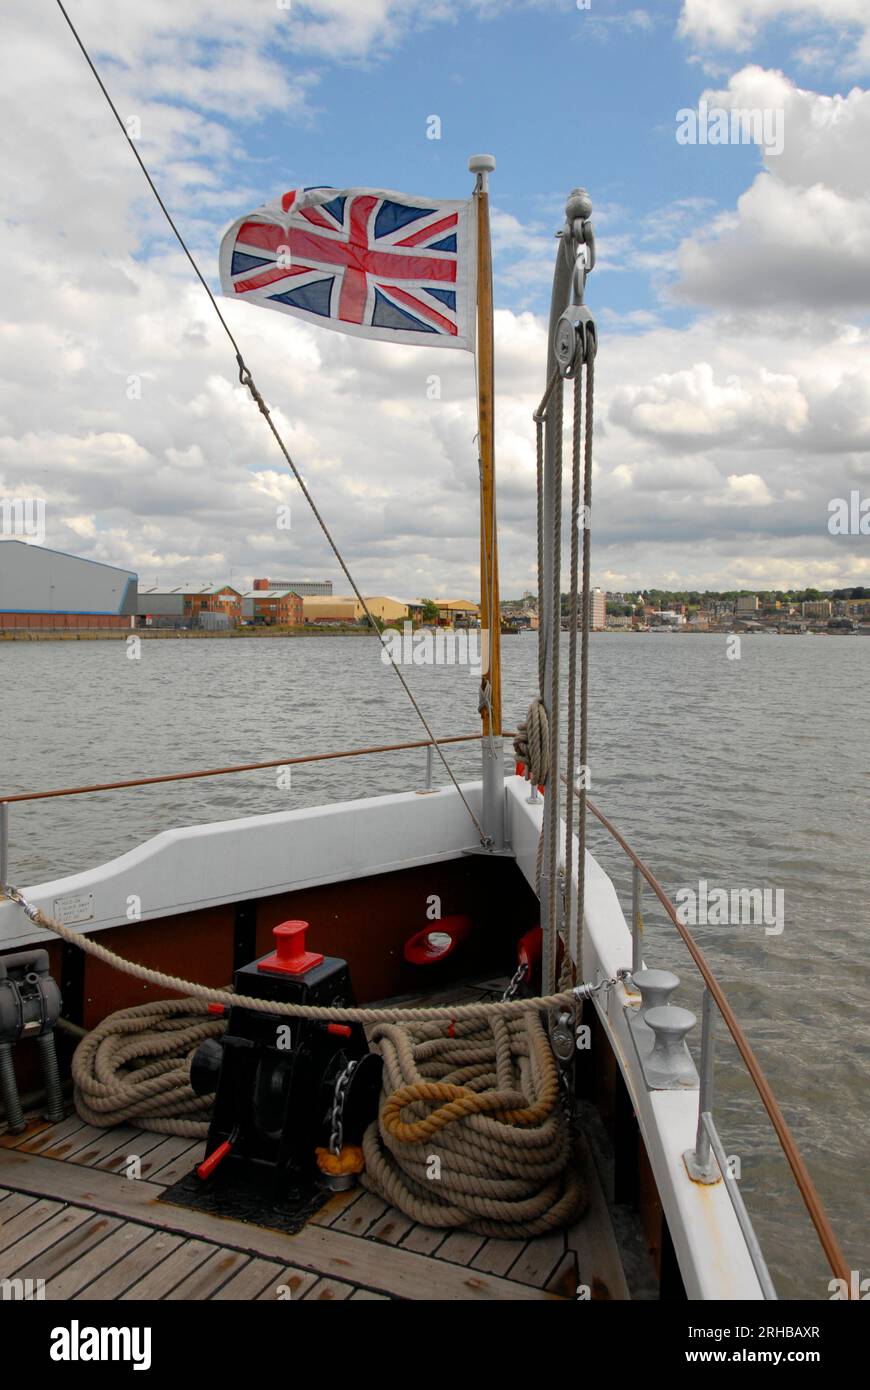 Bow of Pleasure Cruiser sul fiume Medway con Union Flag che vola nella brezza Foto Stock